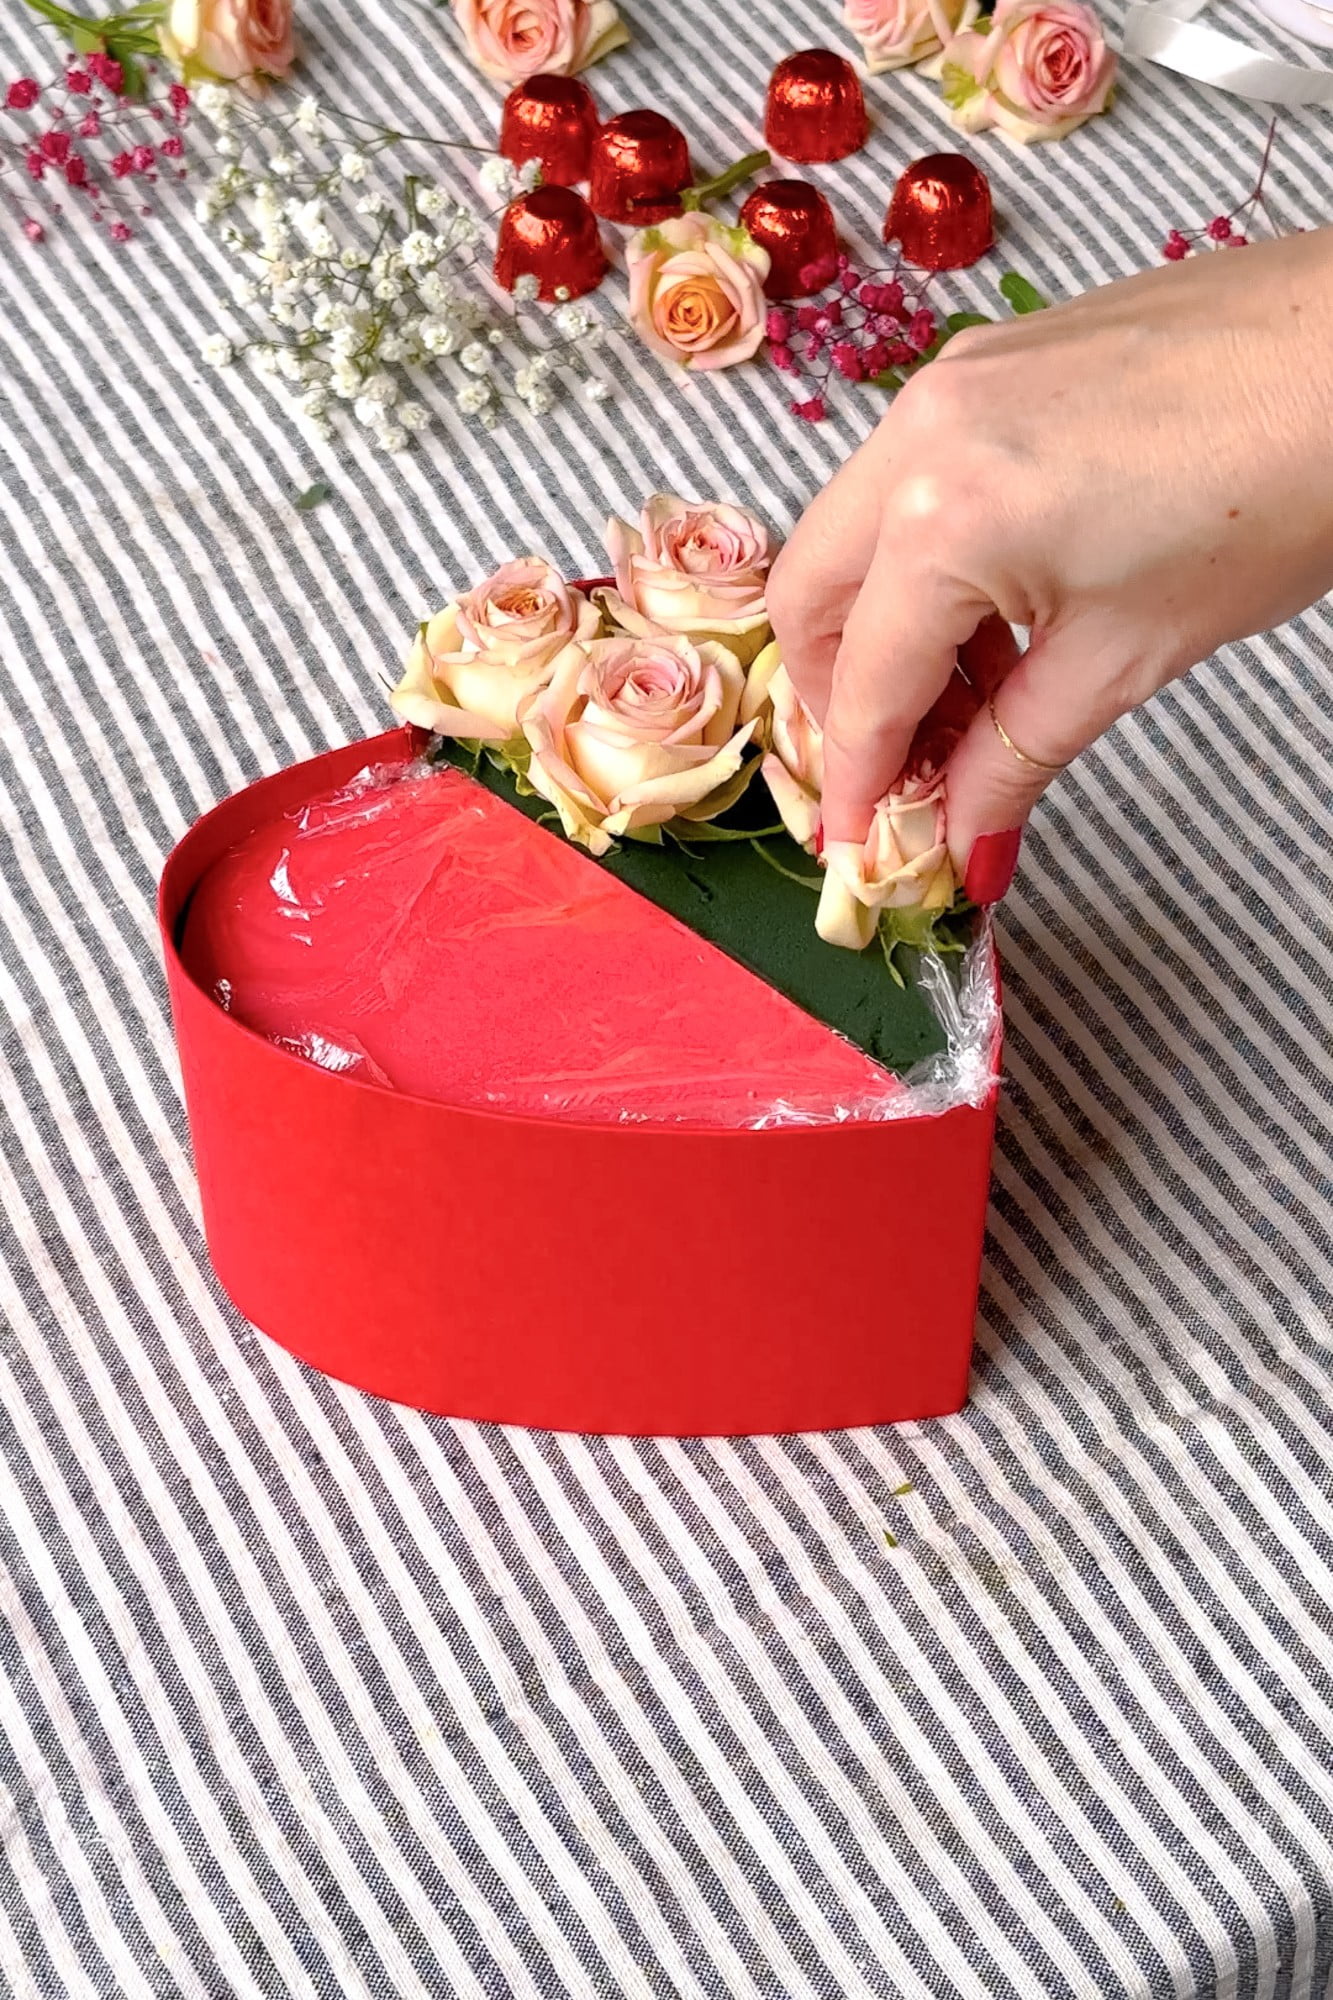 Na połówce z gąbką umieść kwiaty.